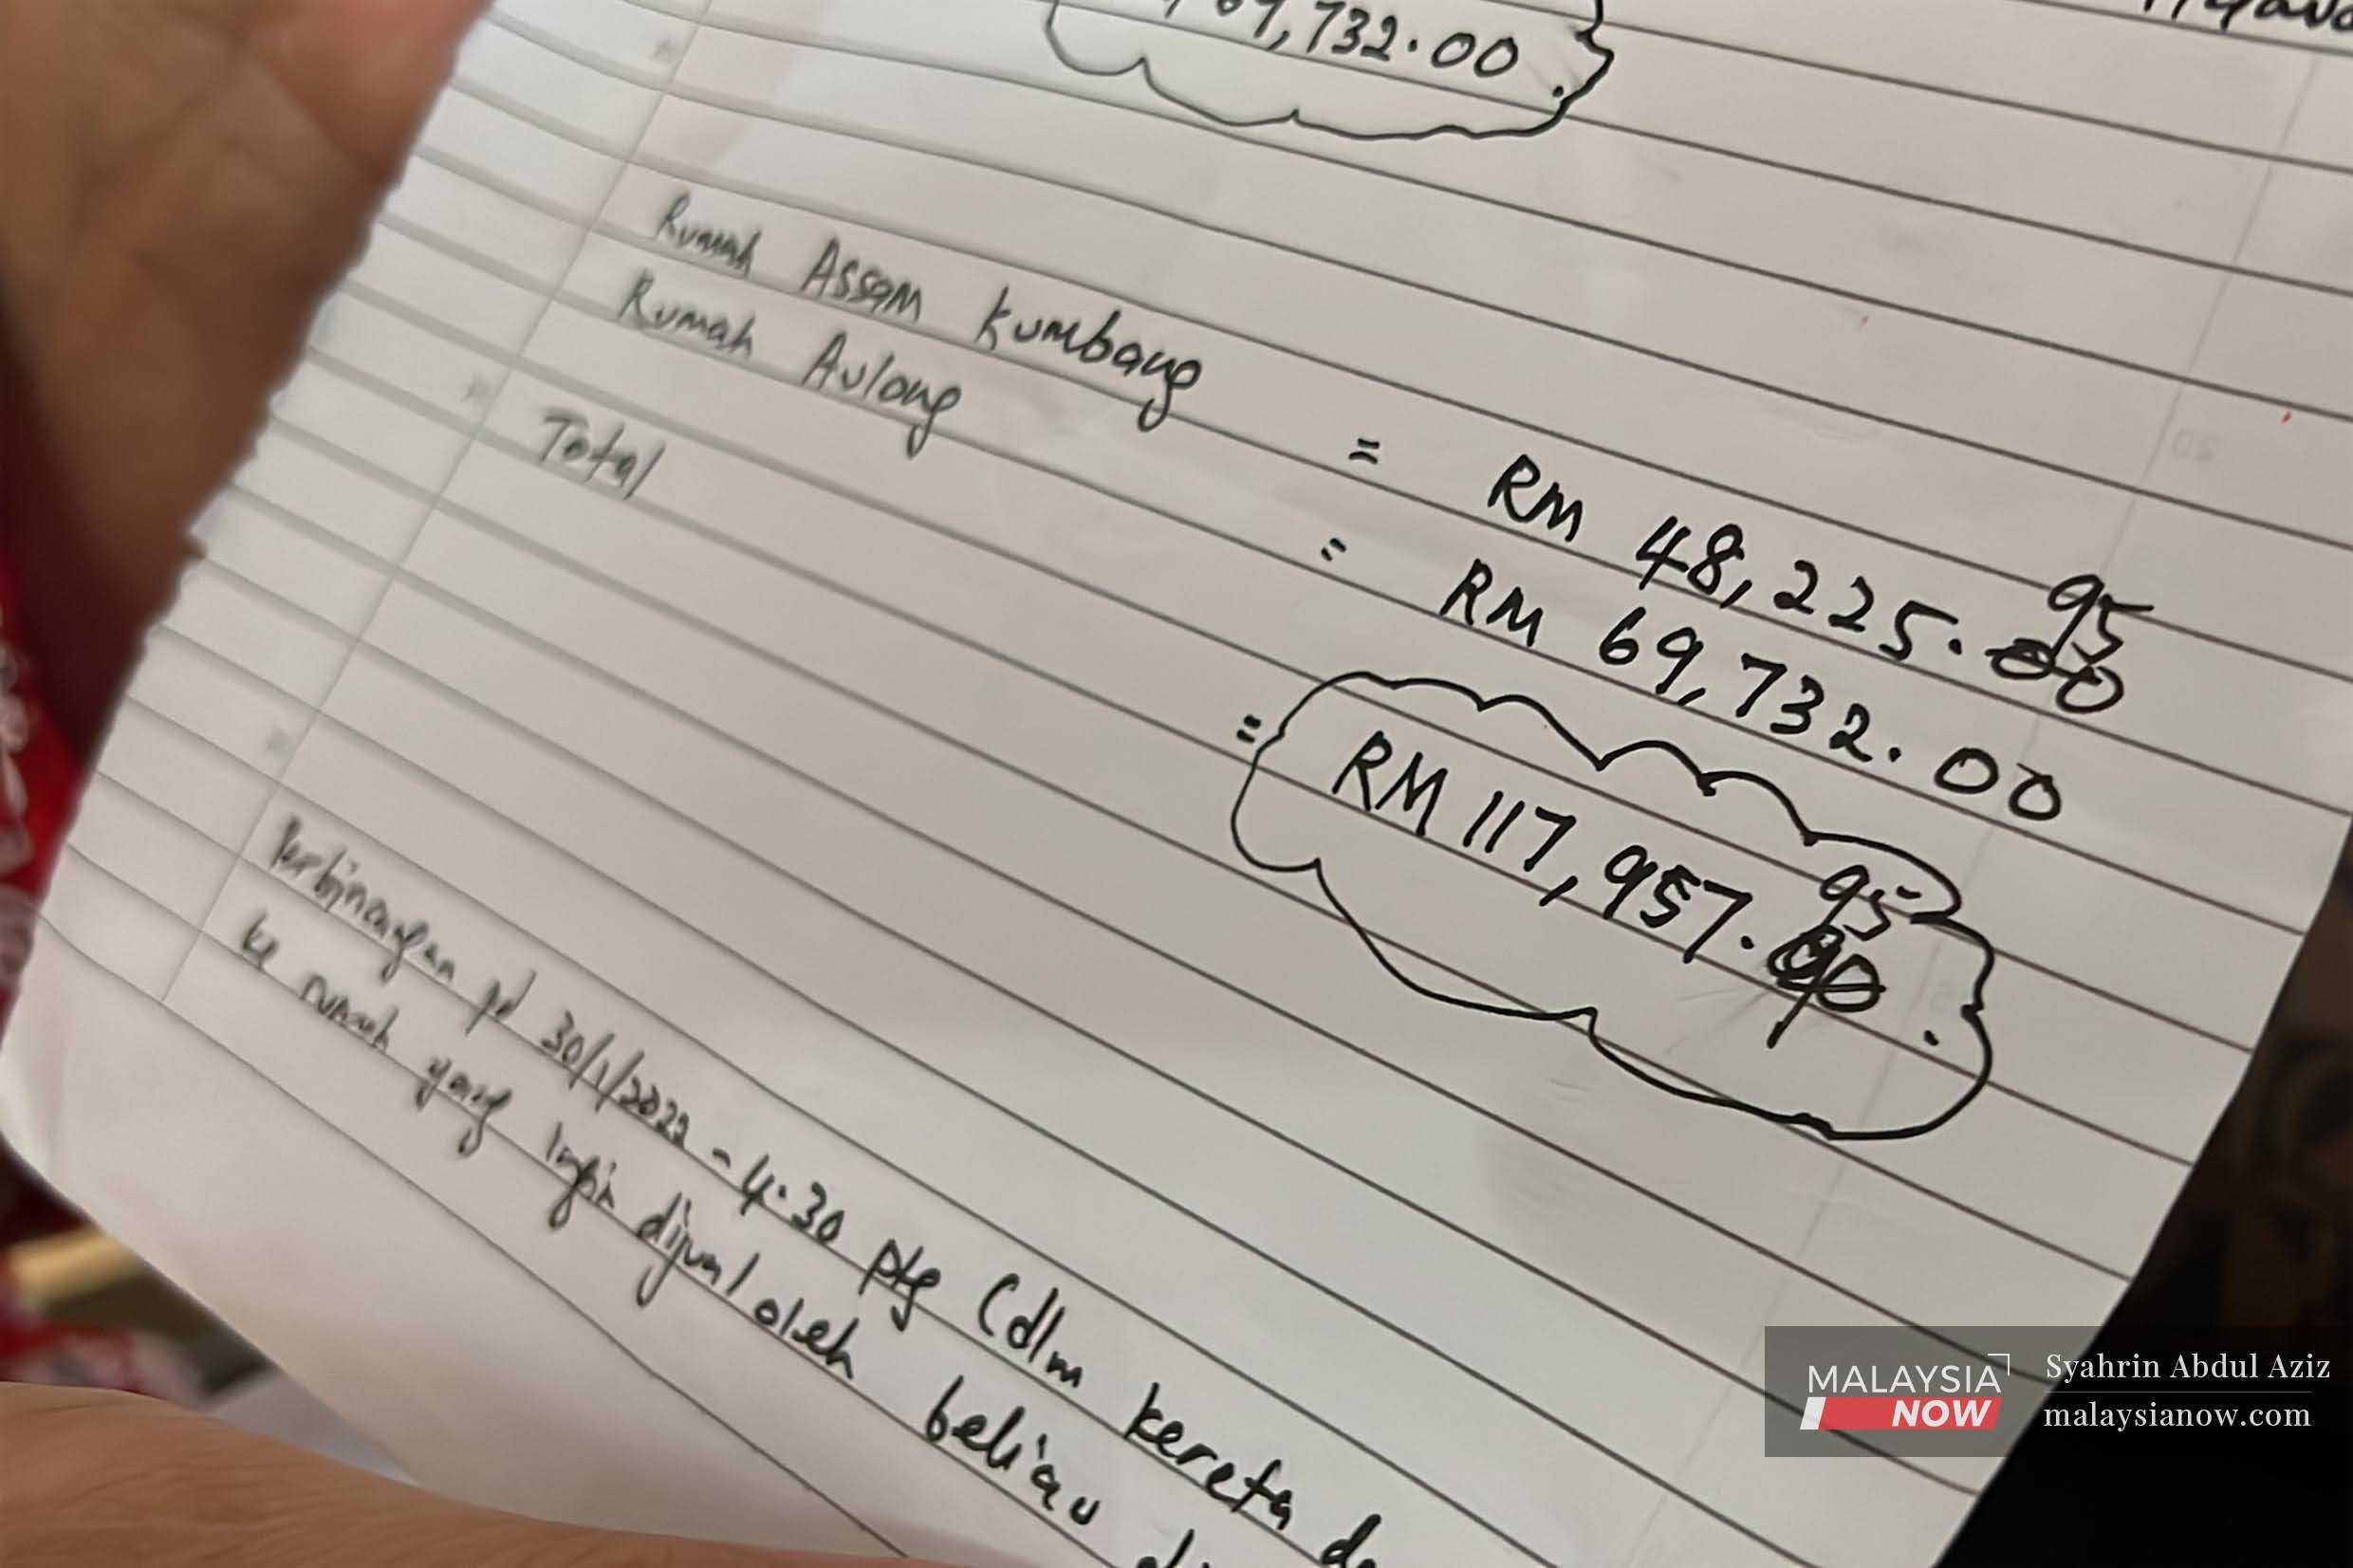 Seorang guru memegang sehelai kertas yang menunjukkan bayaran dibuatnya kepada seorang wanita didakwa menipu orang ramai membabitkan jumlah ratusan ribu ringgit dalam penipuan hartanah di Taiping, Perak.